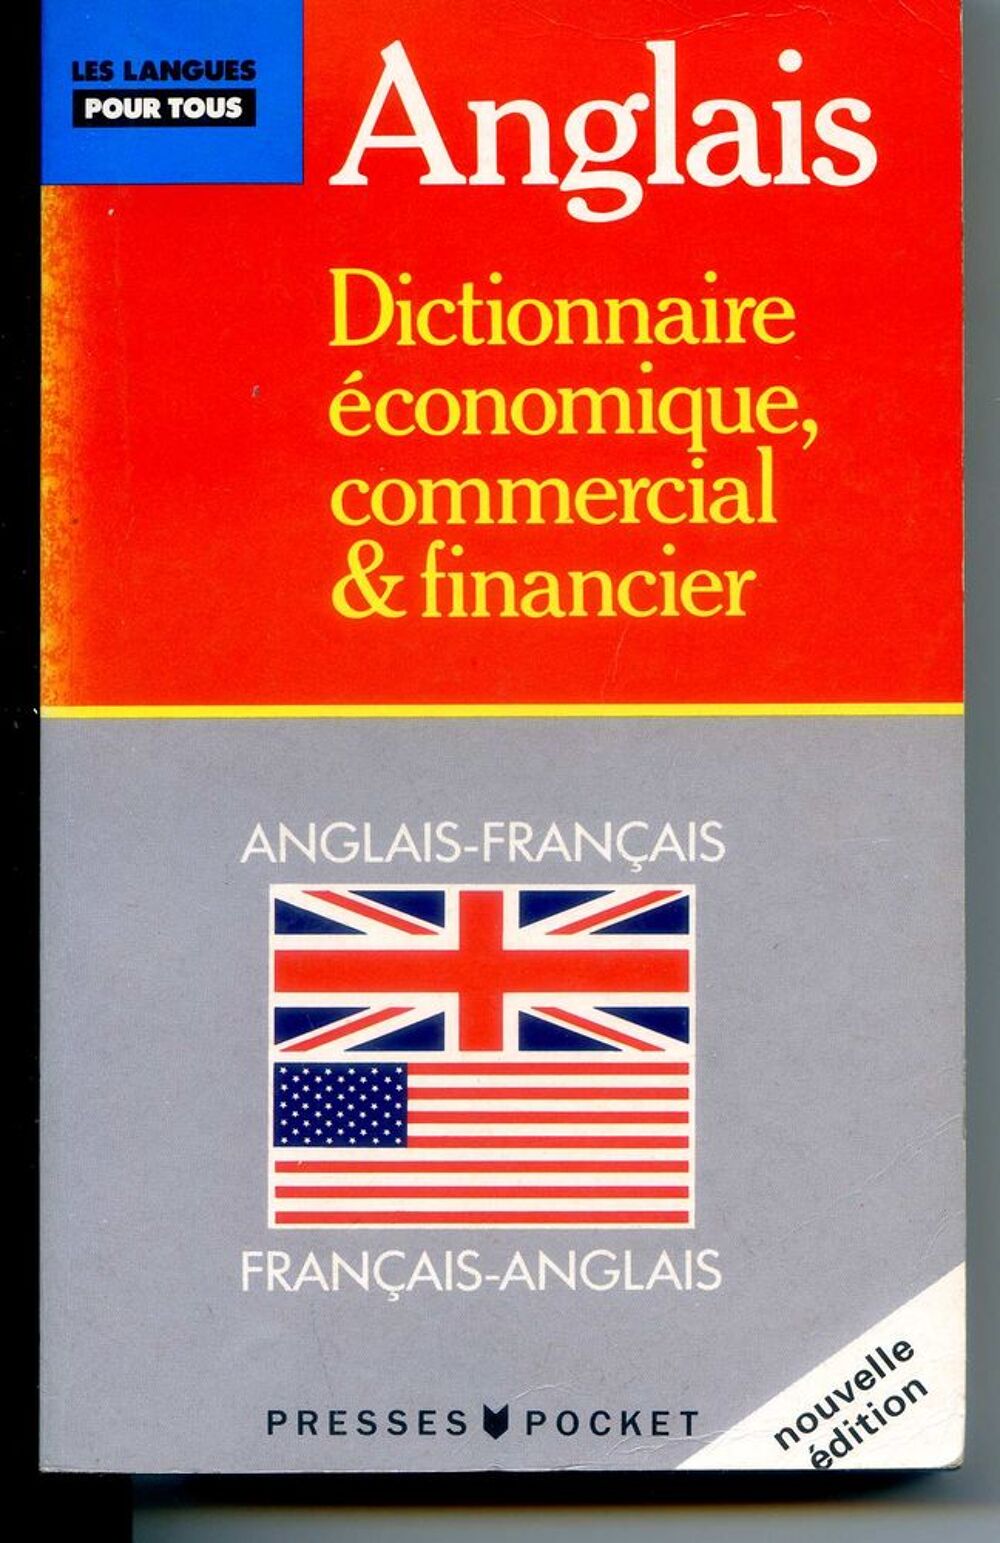 Anglais dictionnaire economique commercial et financier Livres et BD